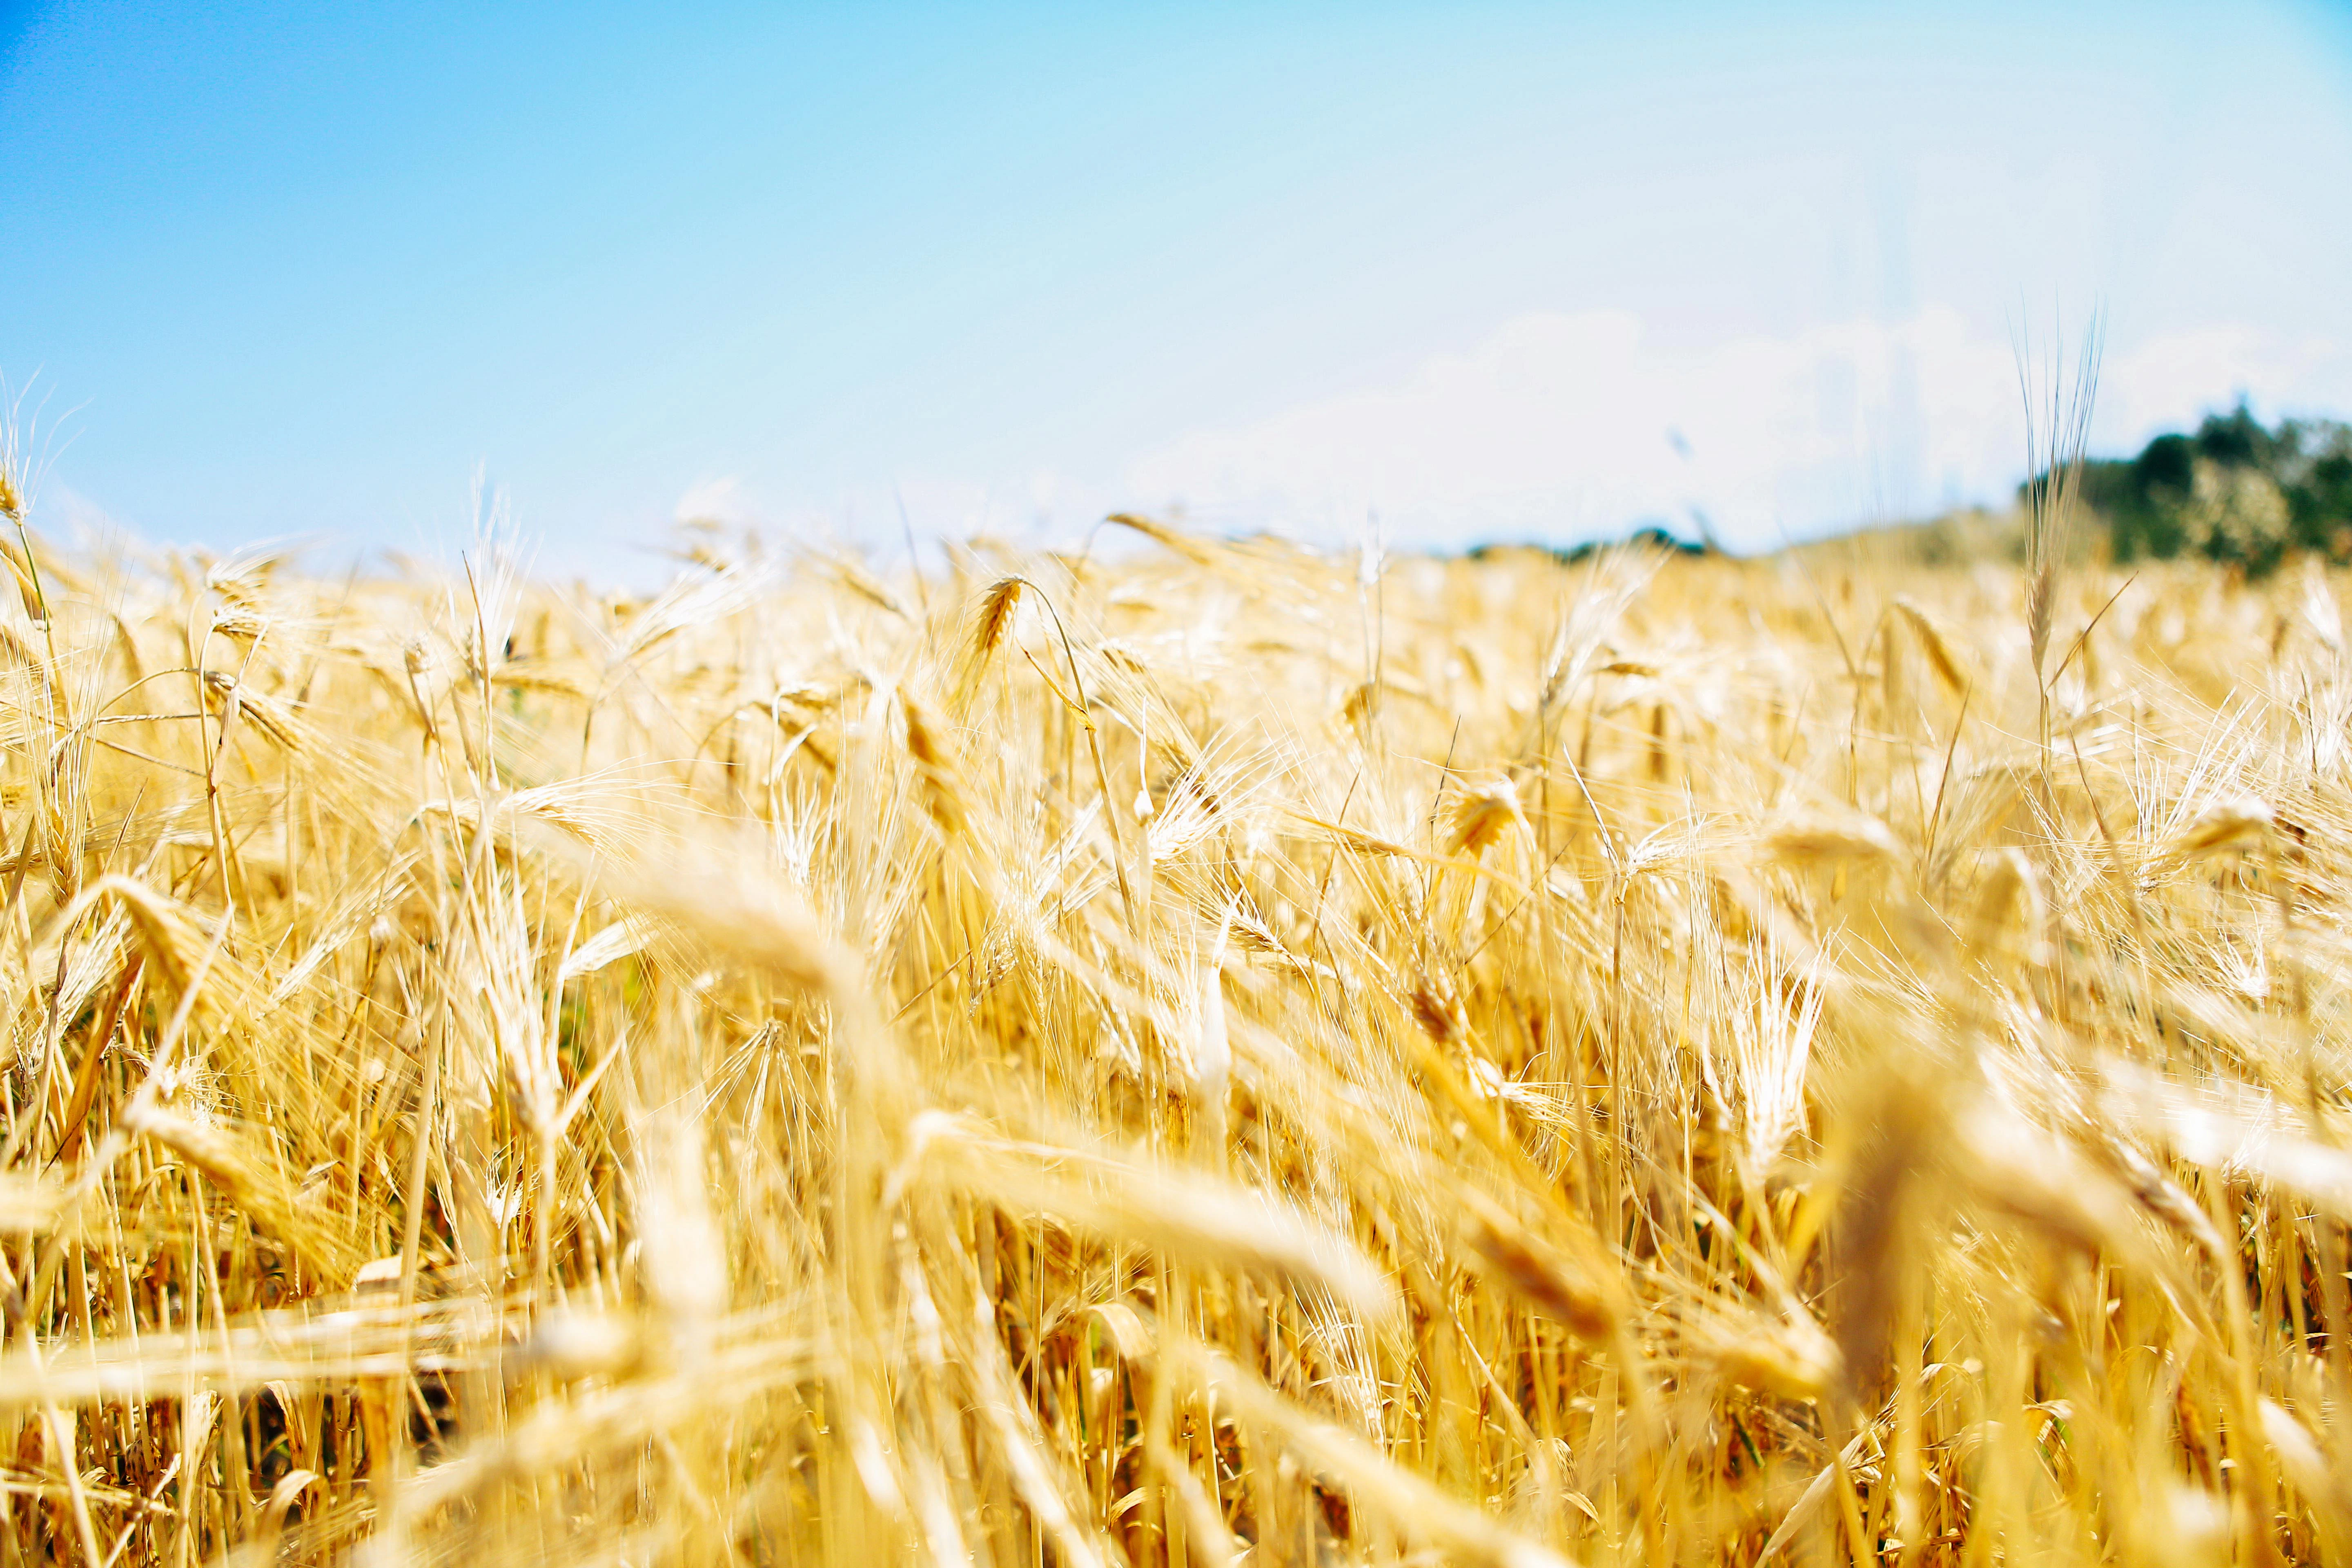 Golden wheat in a field